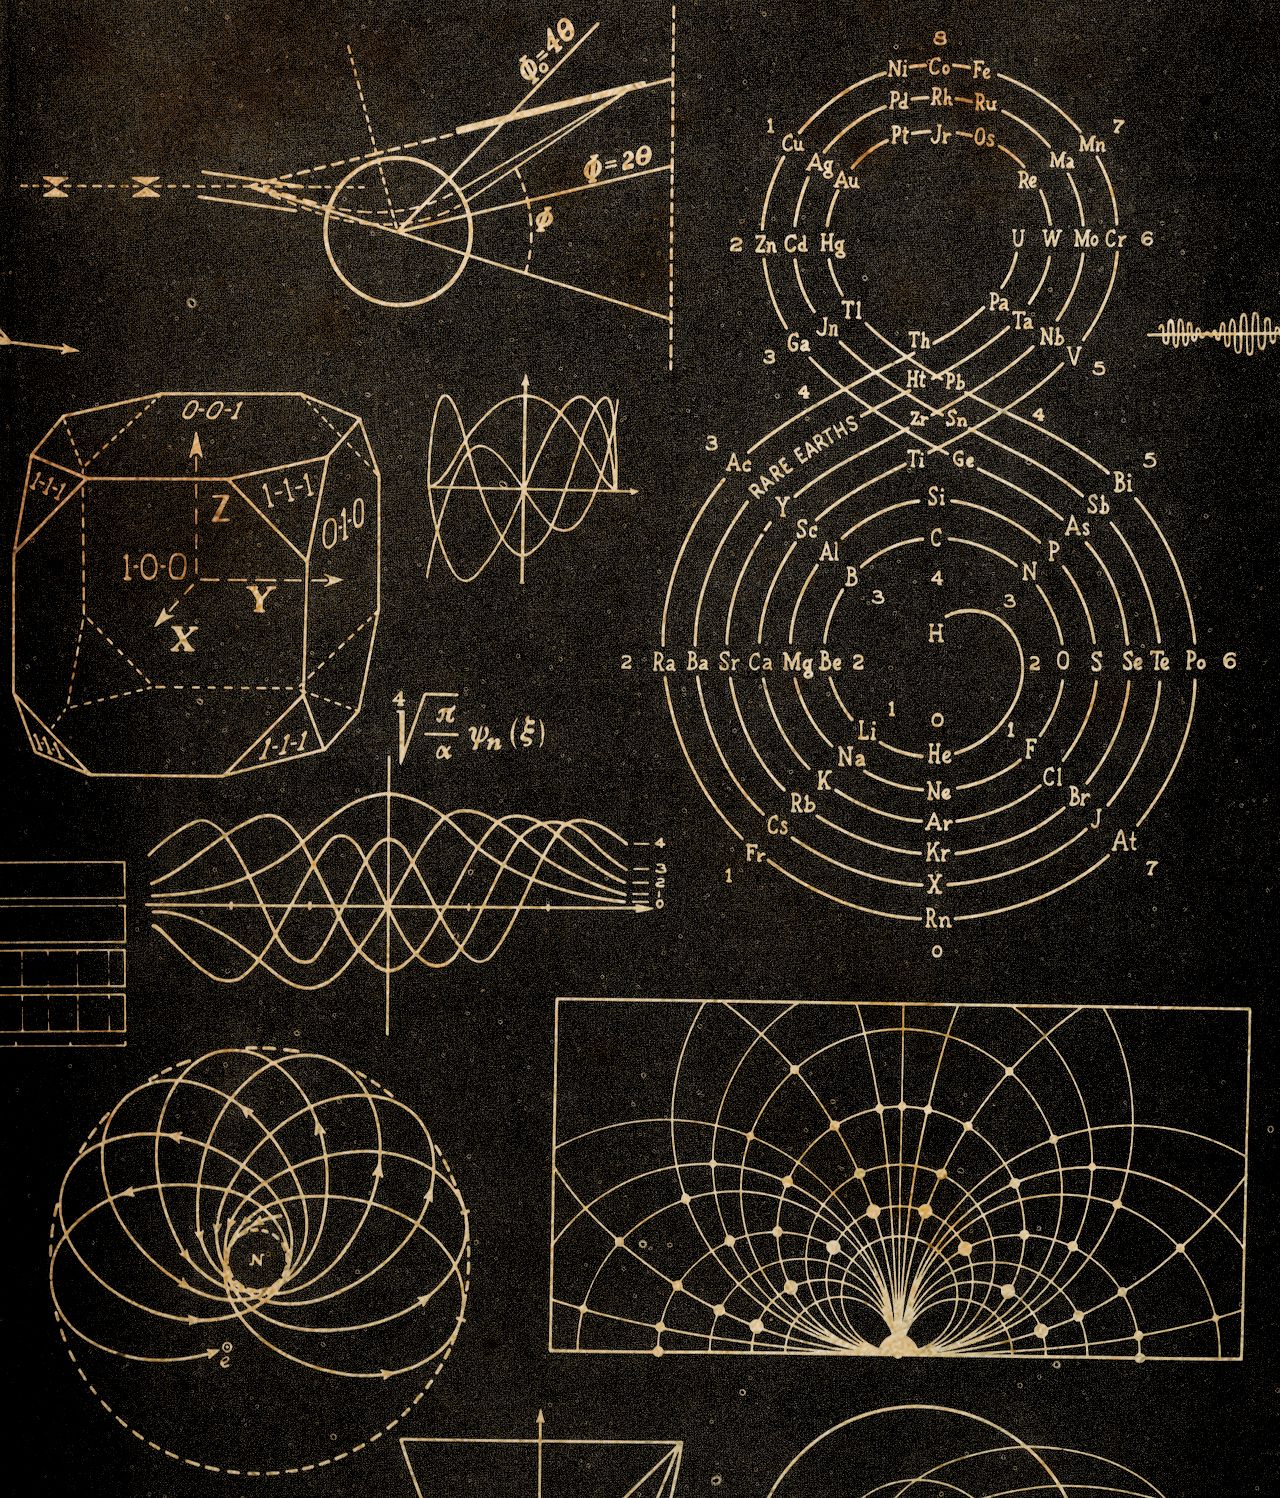 Luitzen E. J. Brouwer: quando la Matematica incontra la Mistica